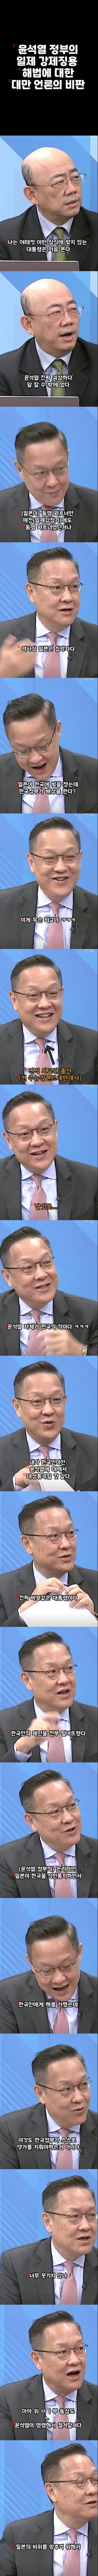 전 뉴질랜드 대만대사 : ''윤석열 자체가 한국의 적이다.